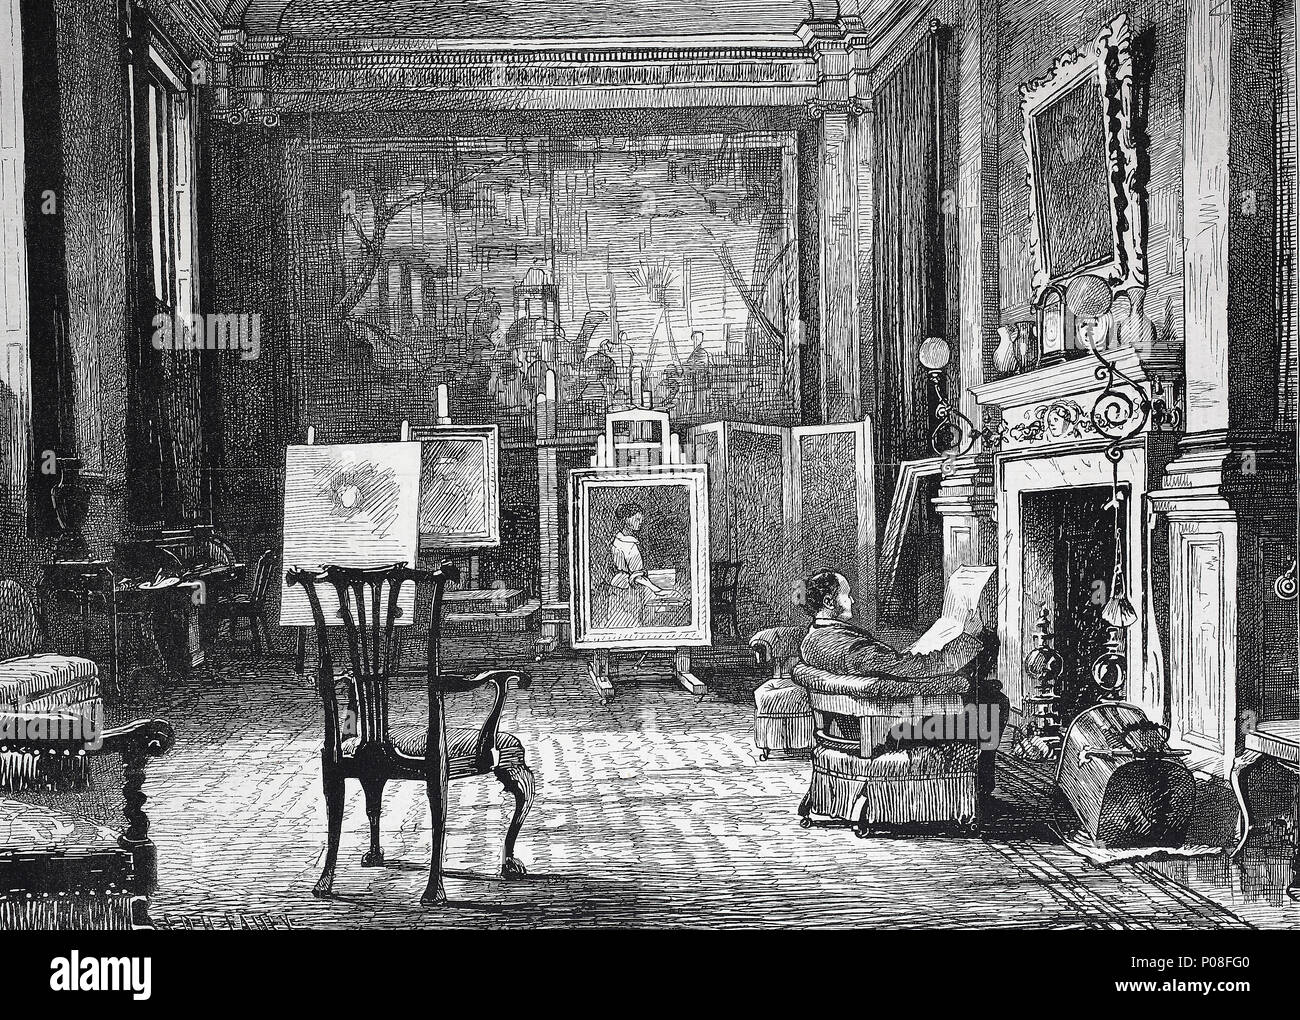 Ein Künstler Studio, Herr J.E. Millais zu Hause. Sir John Everett Millais, 1st Baronet, 1829-1896, war ein englischer Maler und Illustrator, der war einer der Gründer der Pre-Raphaelite Brotherhood, digital verbesserte Reproduktion einer Vorlage drucken aus dem Jahr 1881 Stockfoto